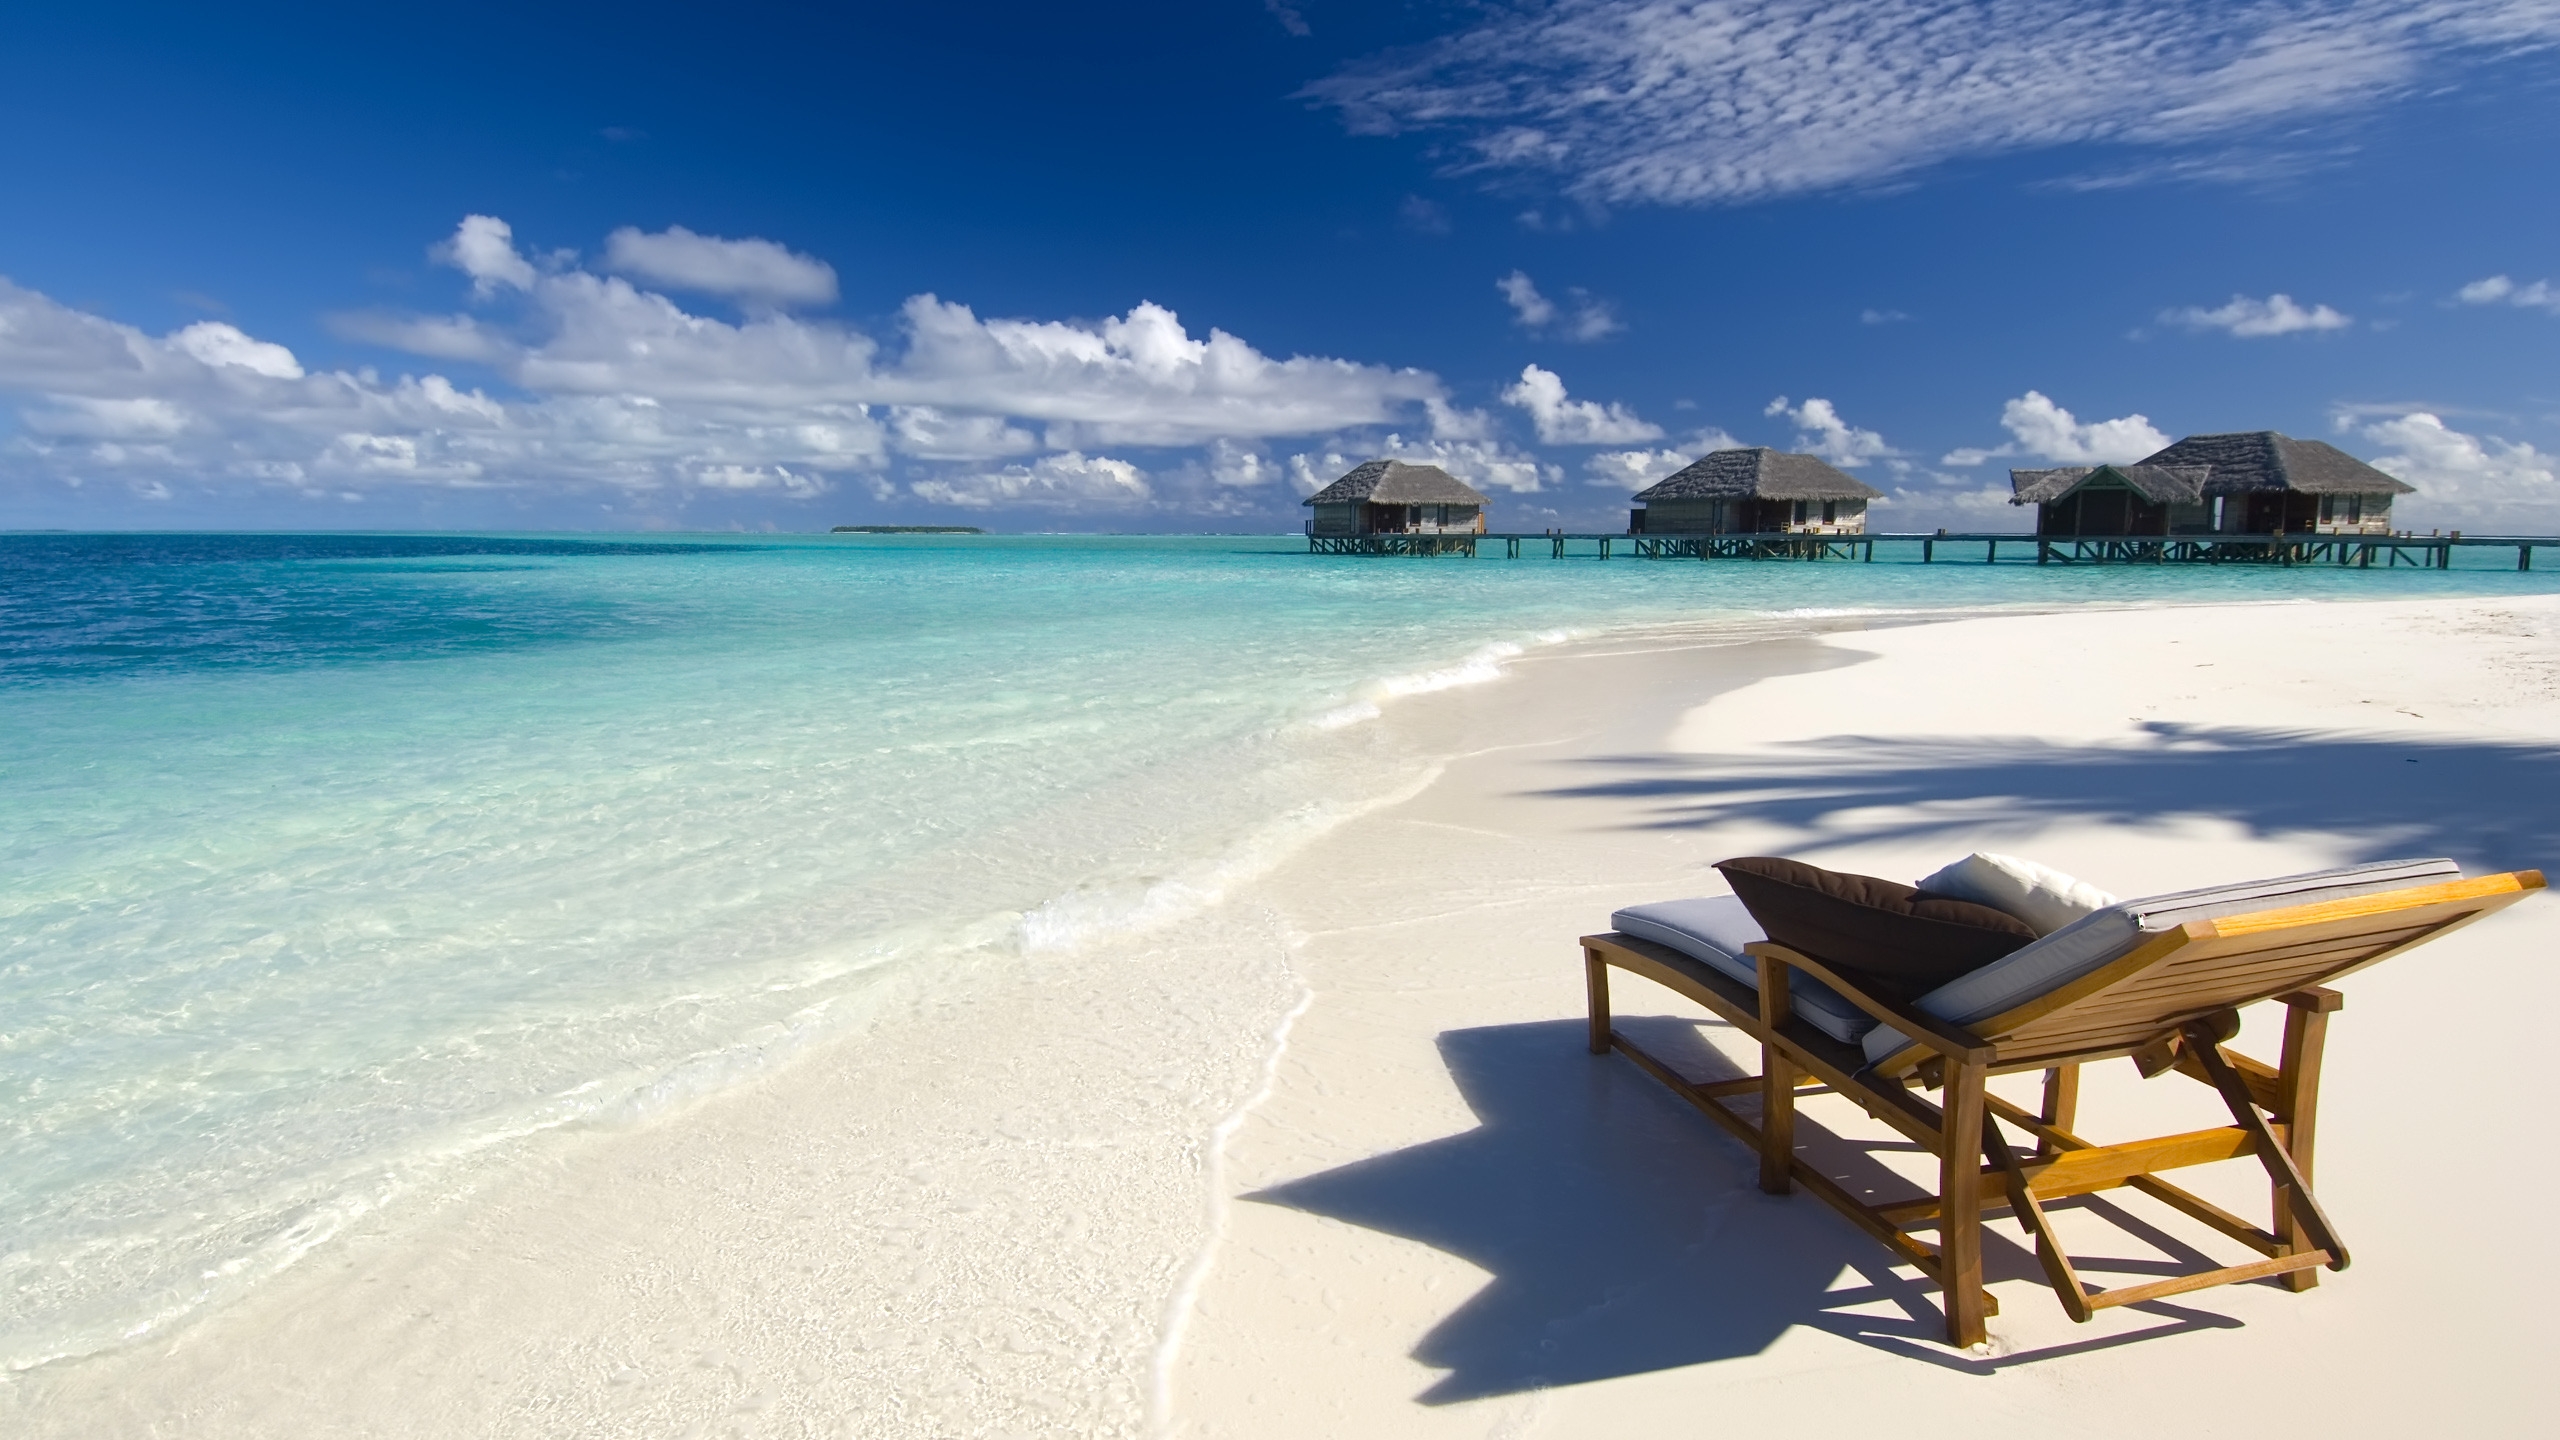 Maldives Conrad Beach for 2560x1440 HDTV resolution